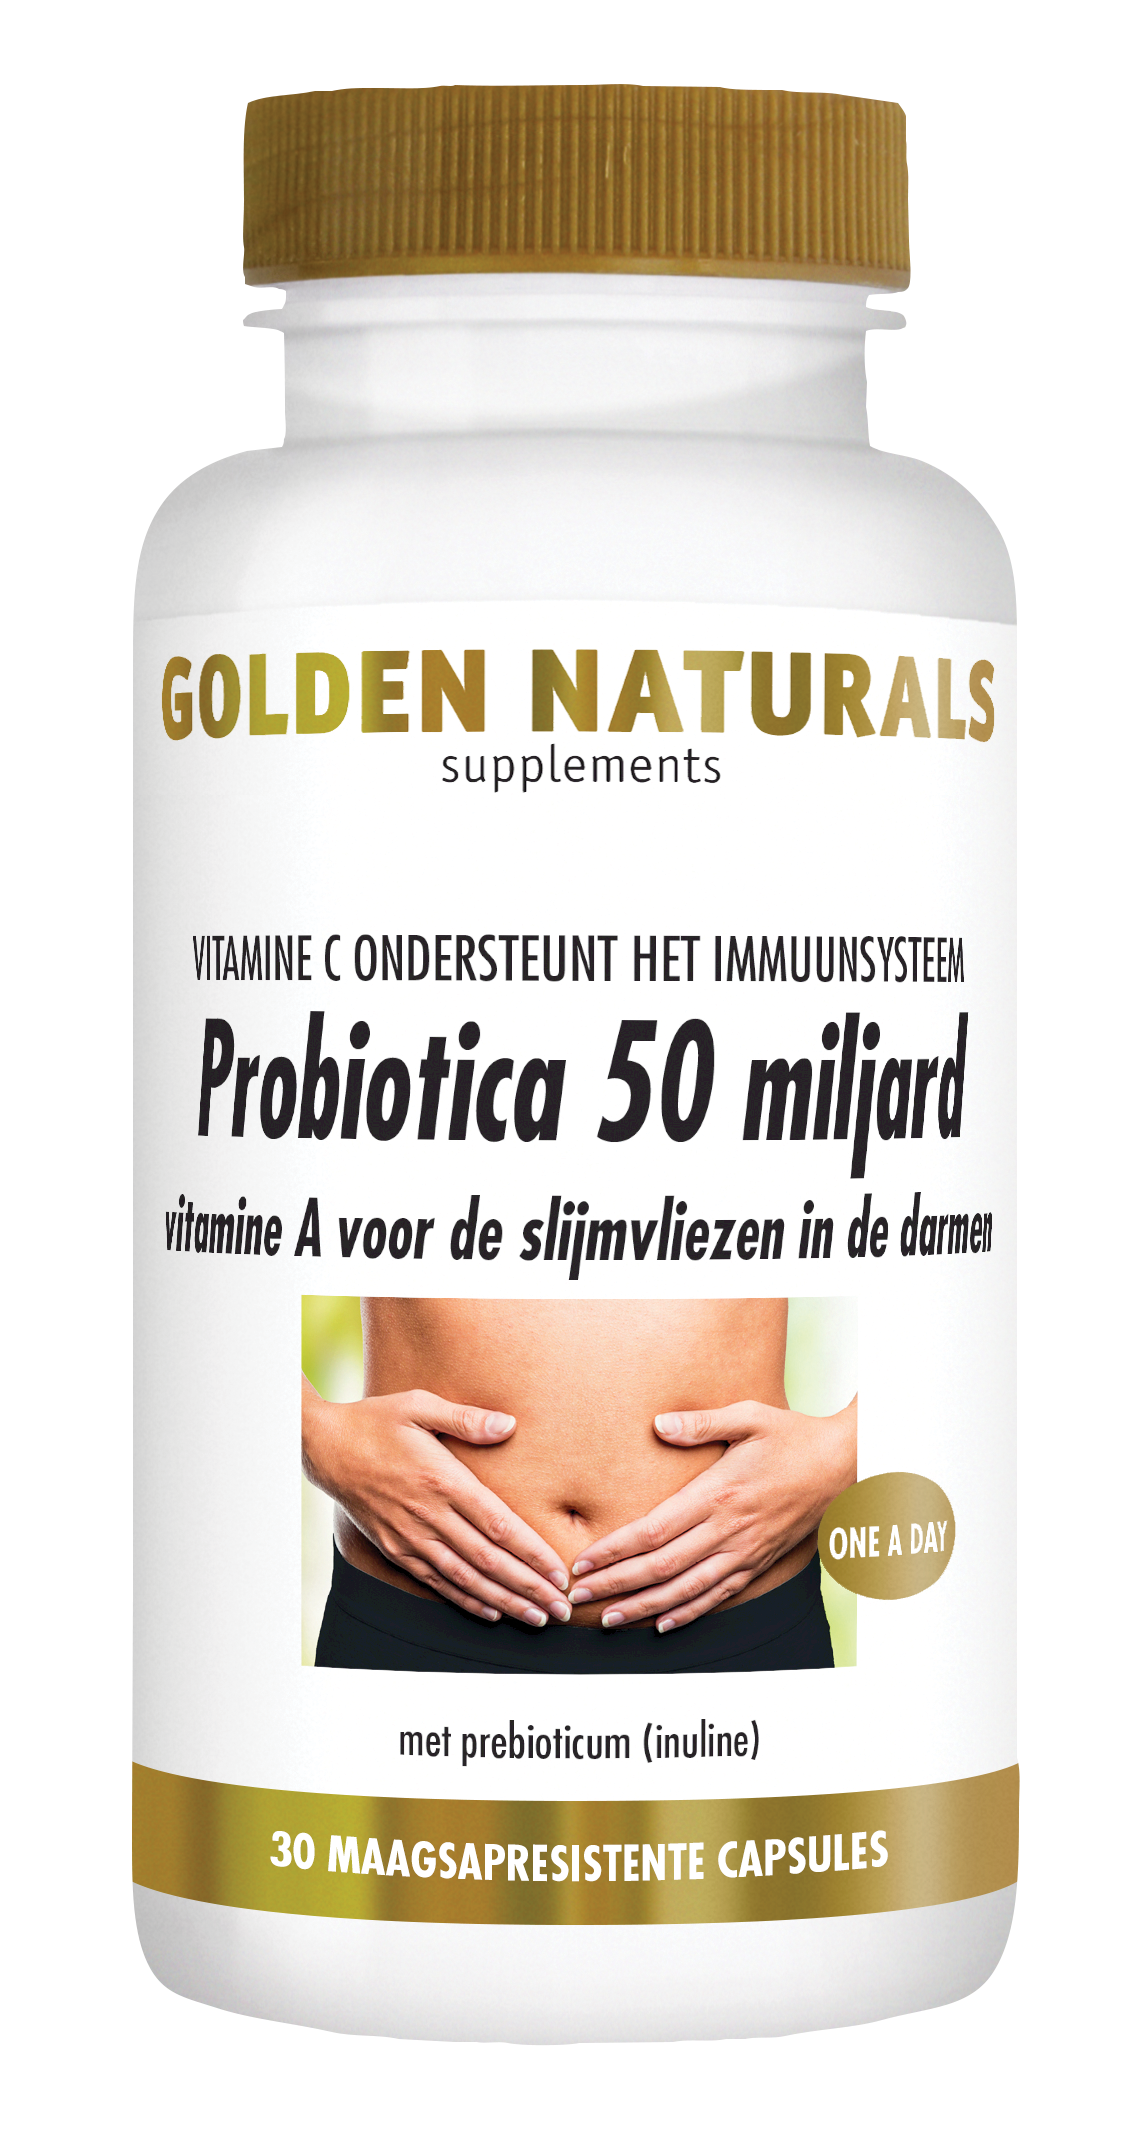 Ellendig nikkel capaciteit Golden Naturals Probiotica 30 miljard kopen? - GoldenNaturals.nl